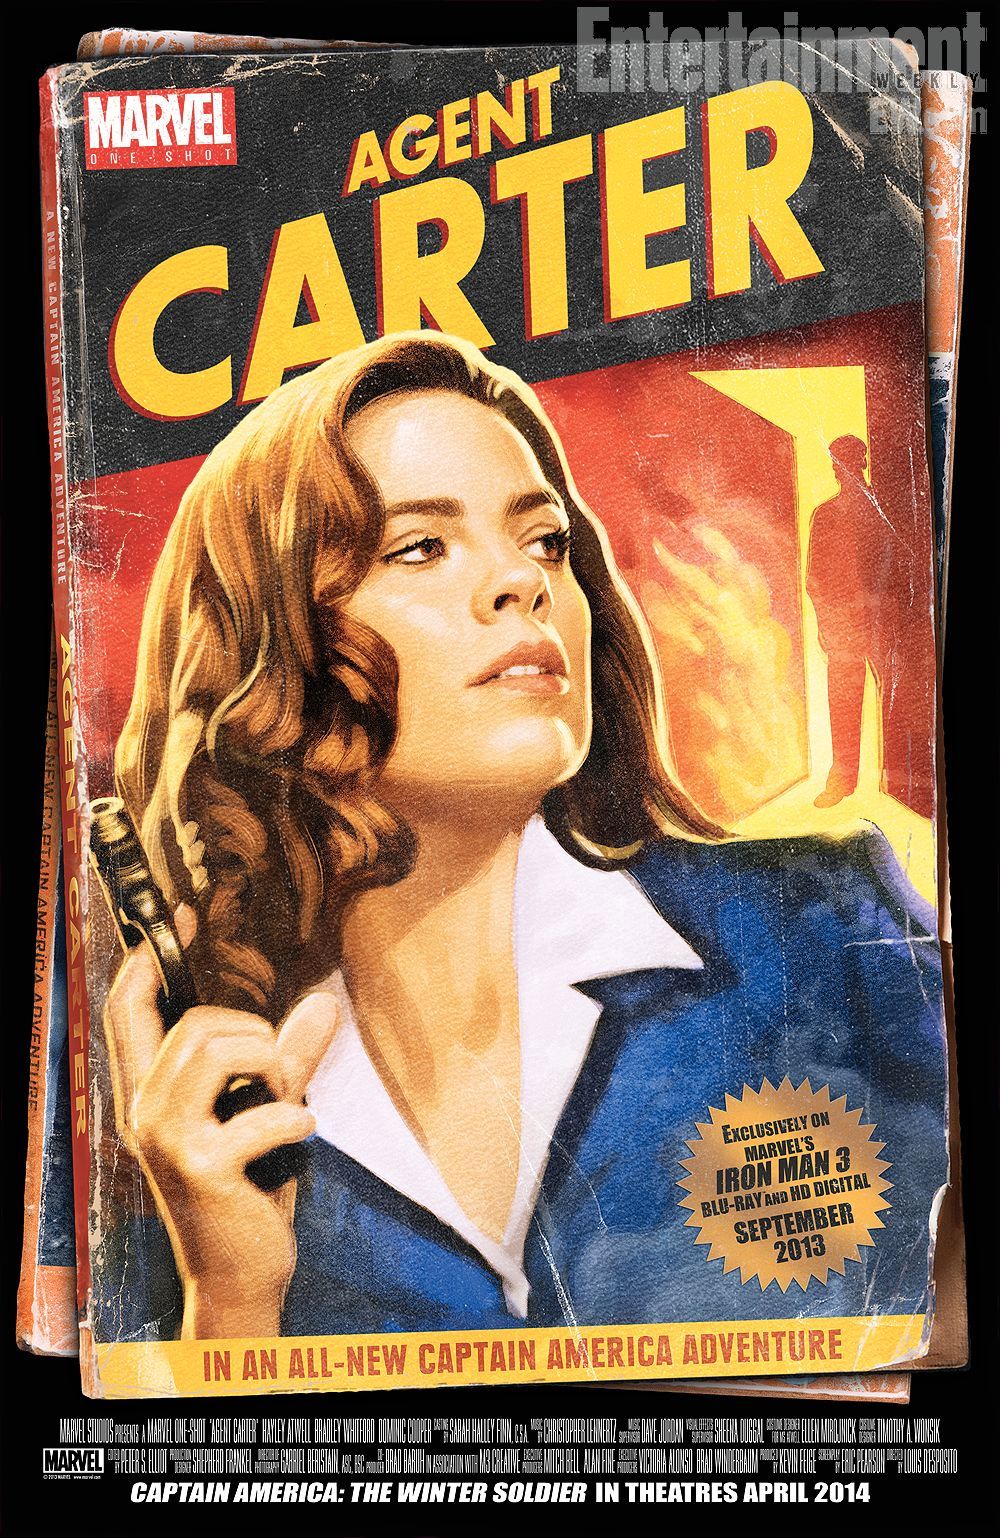 Pirmie attēli un informācija tiek piegādāta filmai “Marvel One-Shot: Agent Carter”